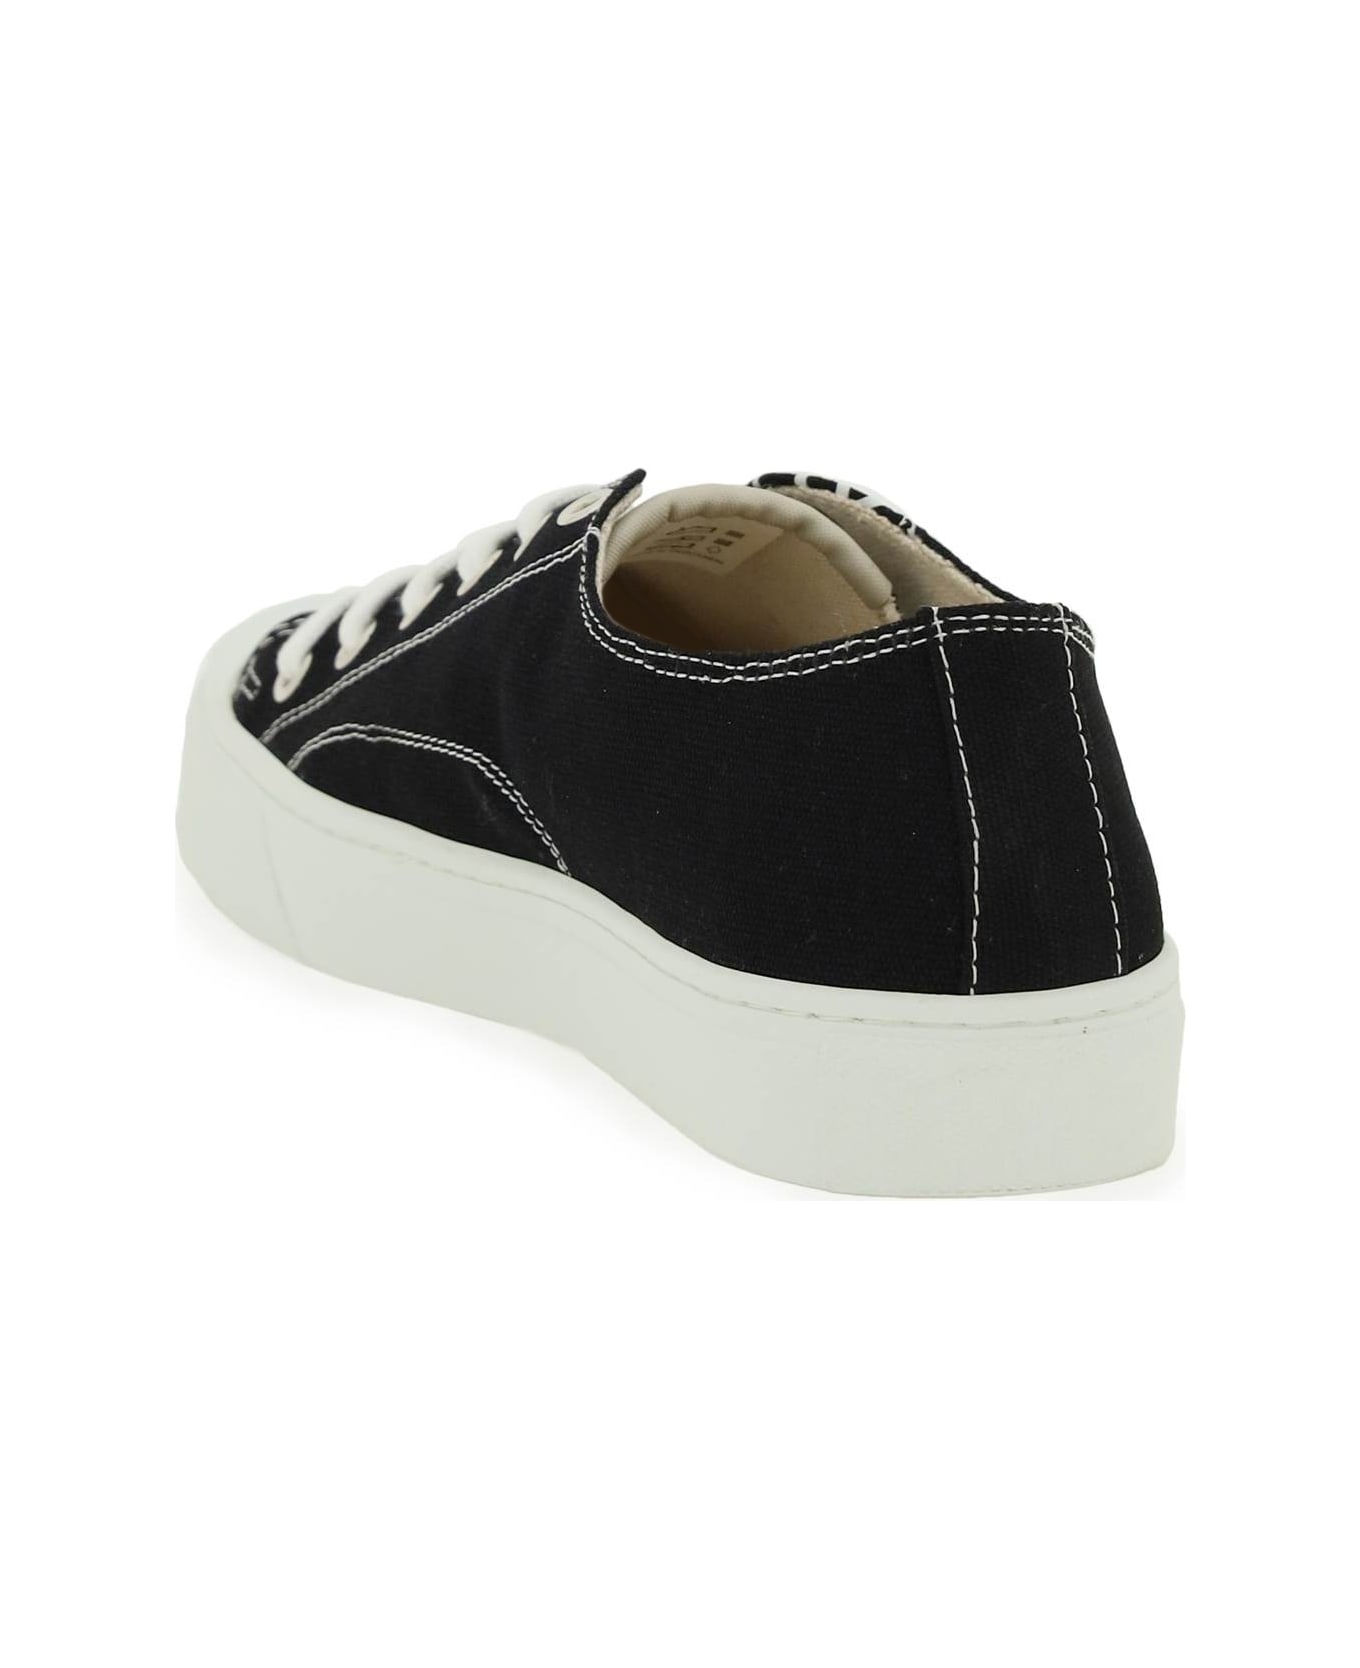 Vivienne Westwood Plimsoll Low Top 2.0 Sneakers - BLACK (Black)